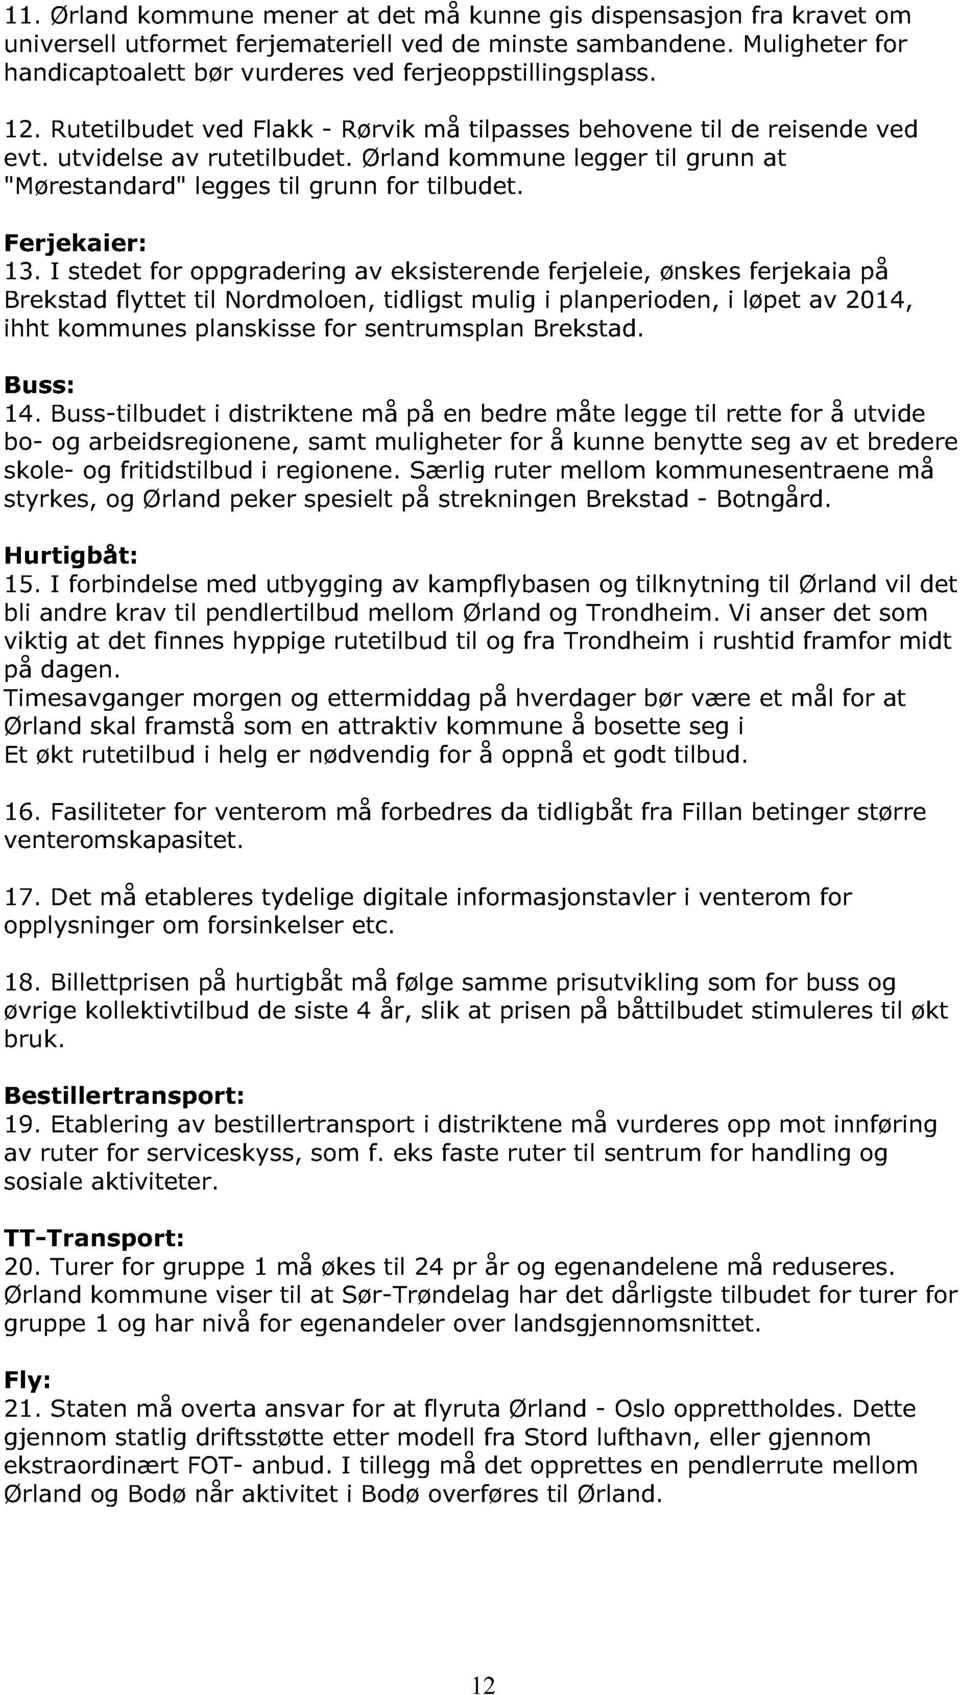 Ørland kommune legger til grunn at "Mørestandard" legges til grunn for tilbudet. Ferjekaier: 13.